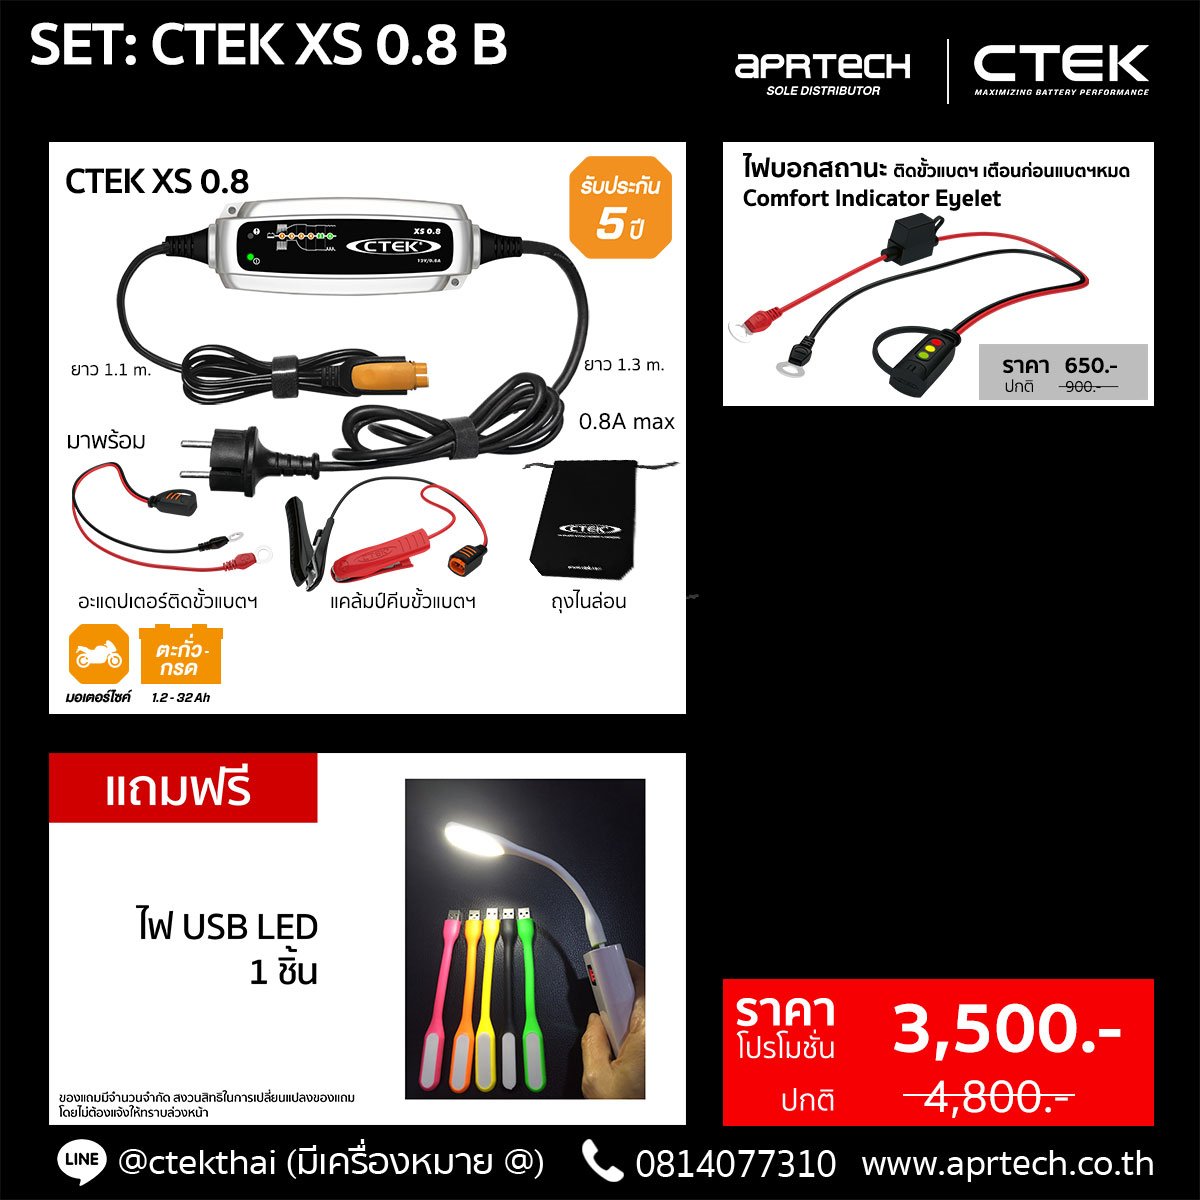 SET XS 0.8 B (CTEK XS 0.8 + Indicator Eyelet)